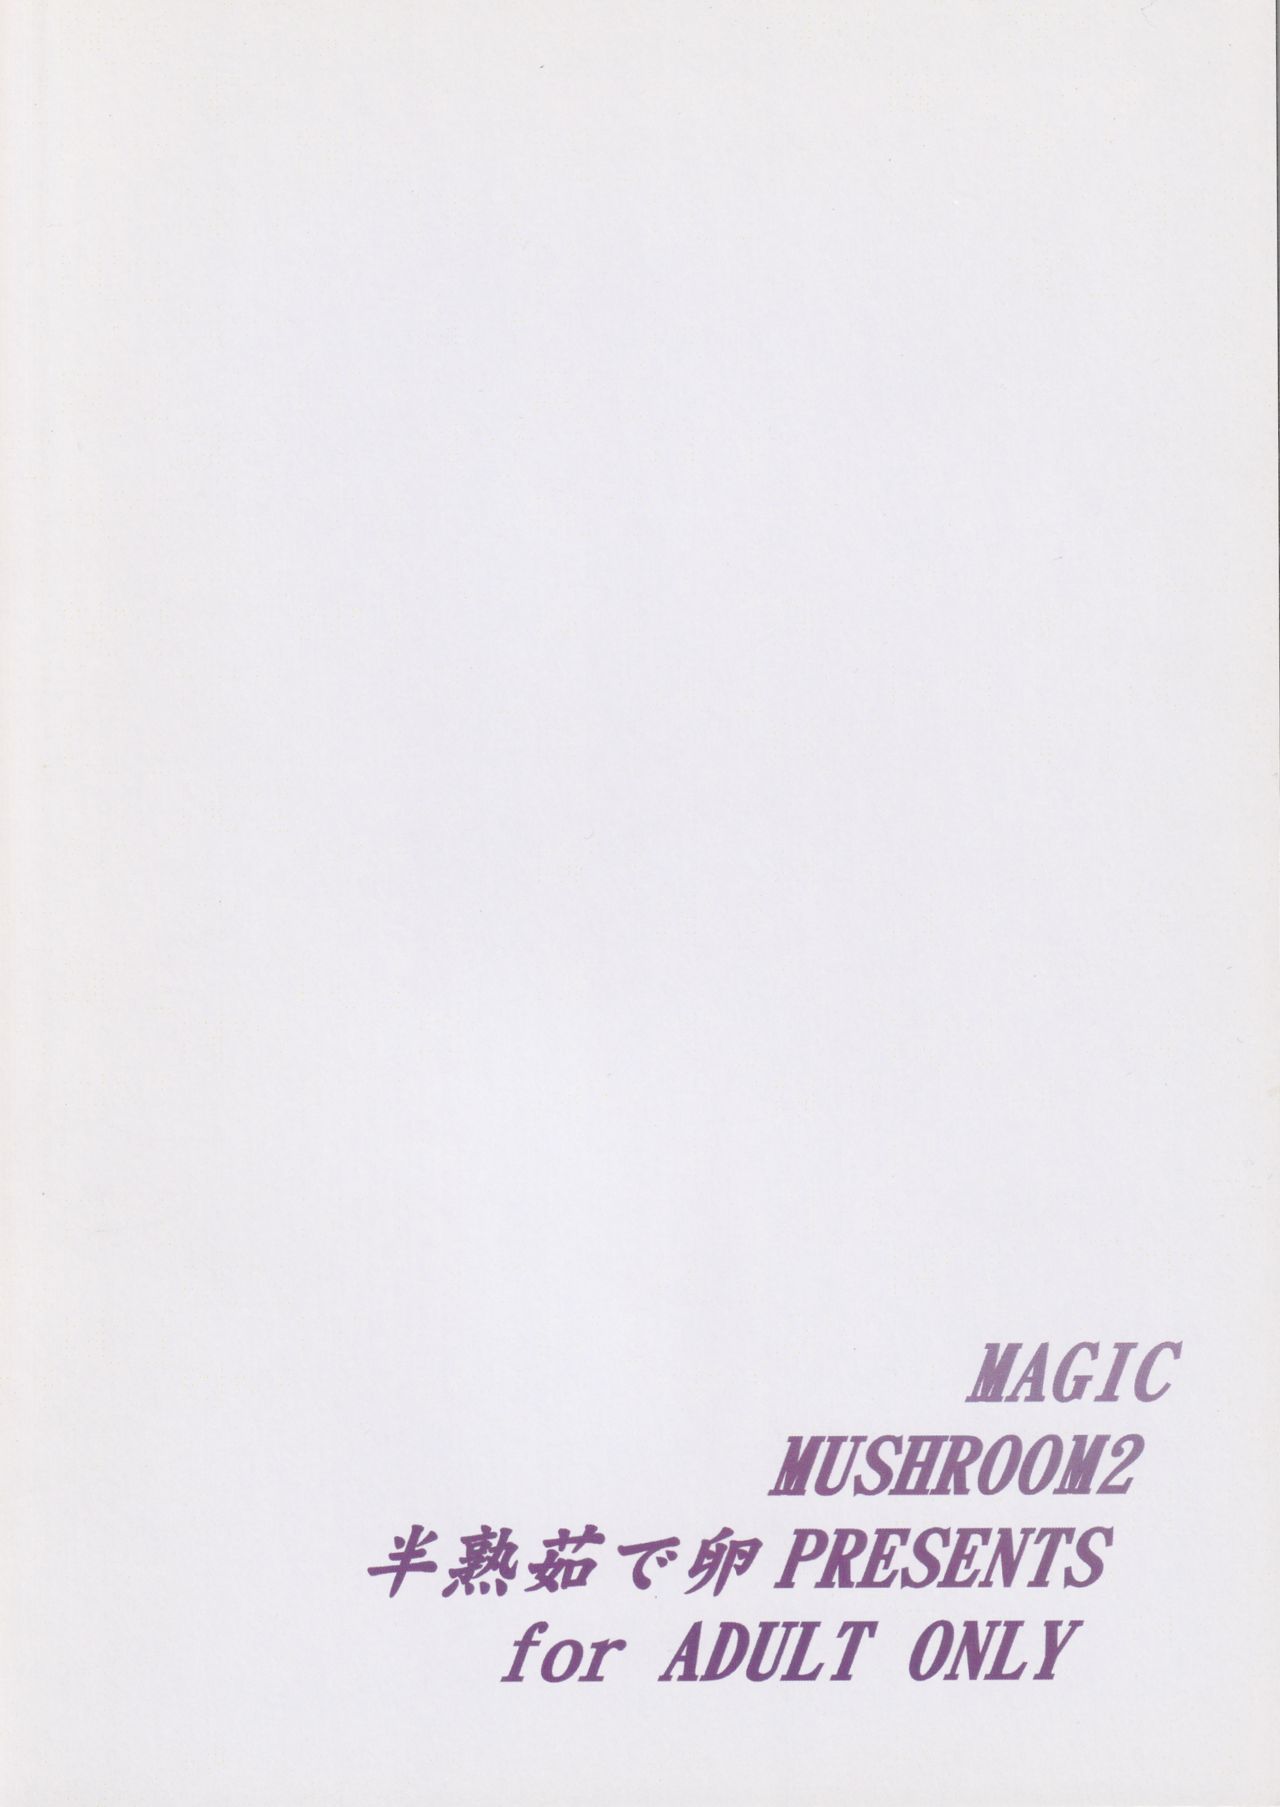 (ふたけっと3) [半熟茹で卵 (カナダ人)] Magic Mushroom 2 (ハリー・ポッター)